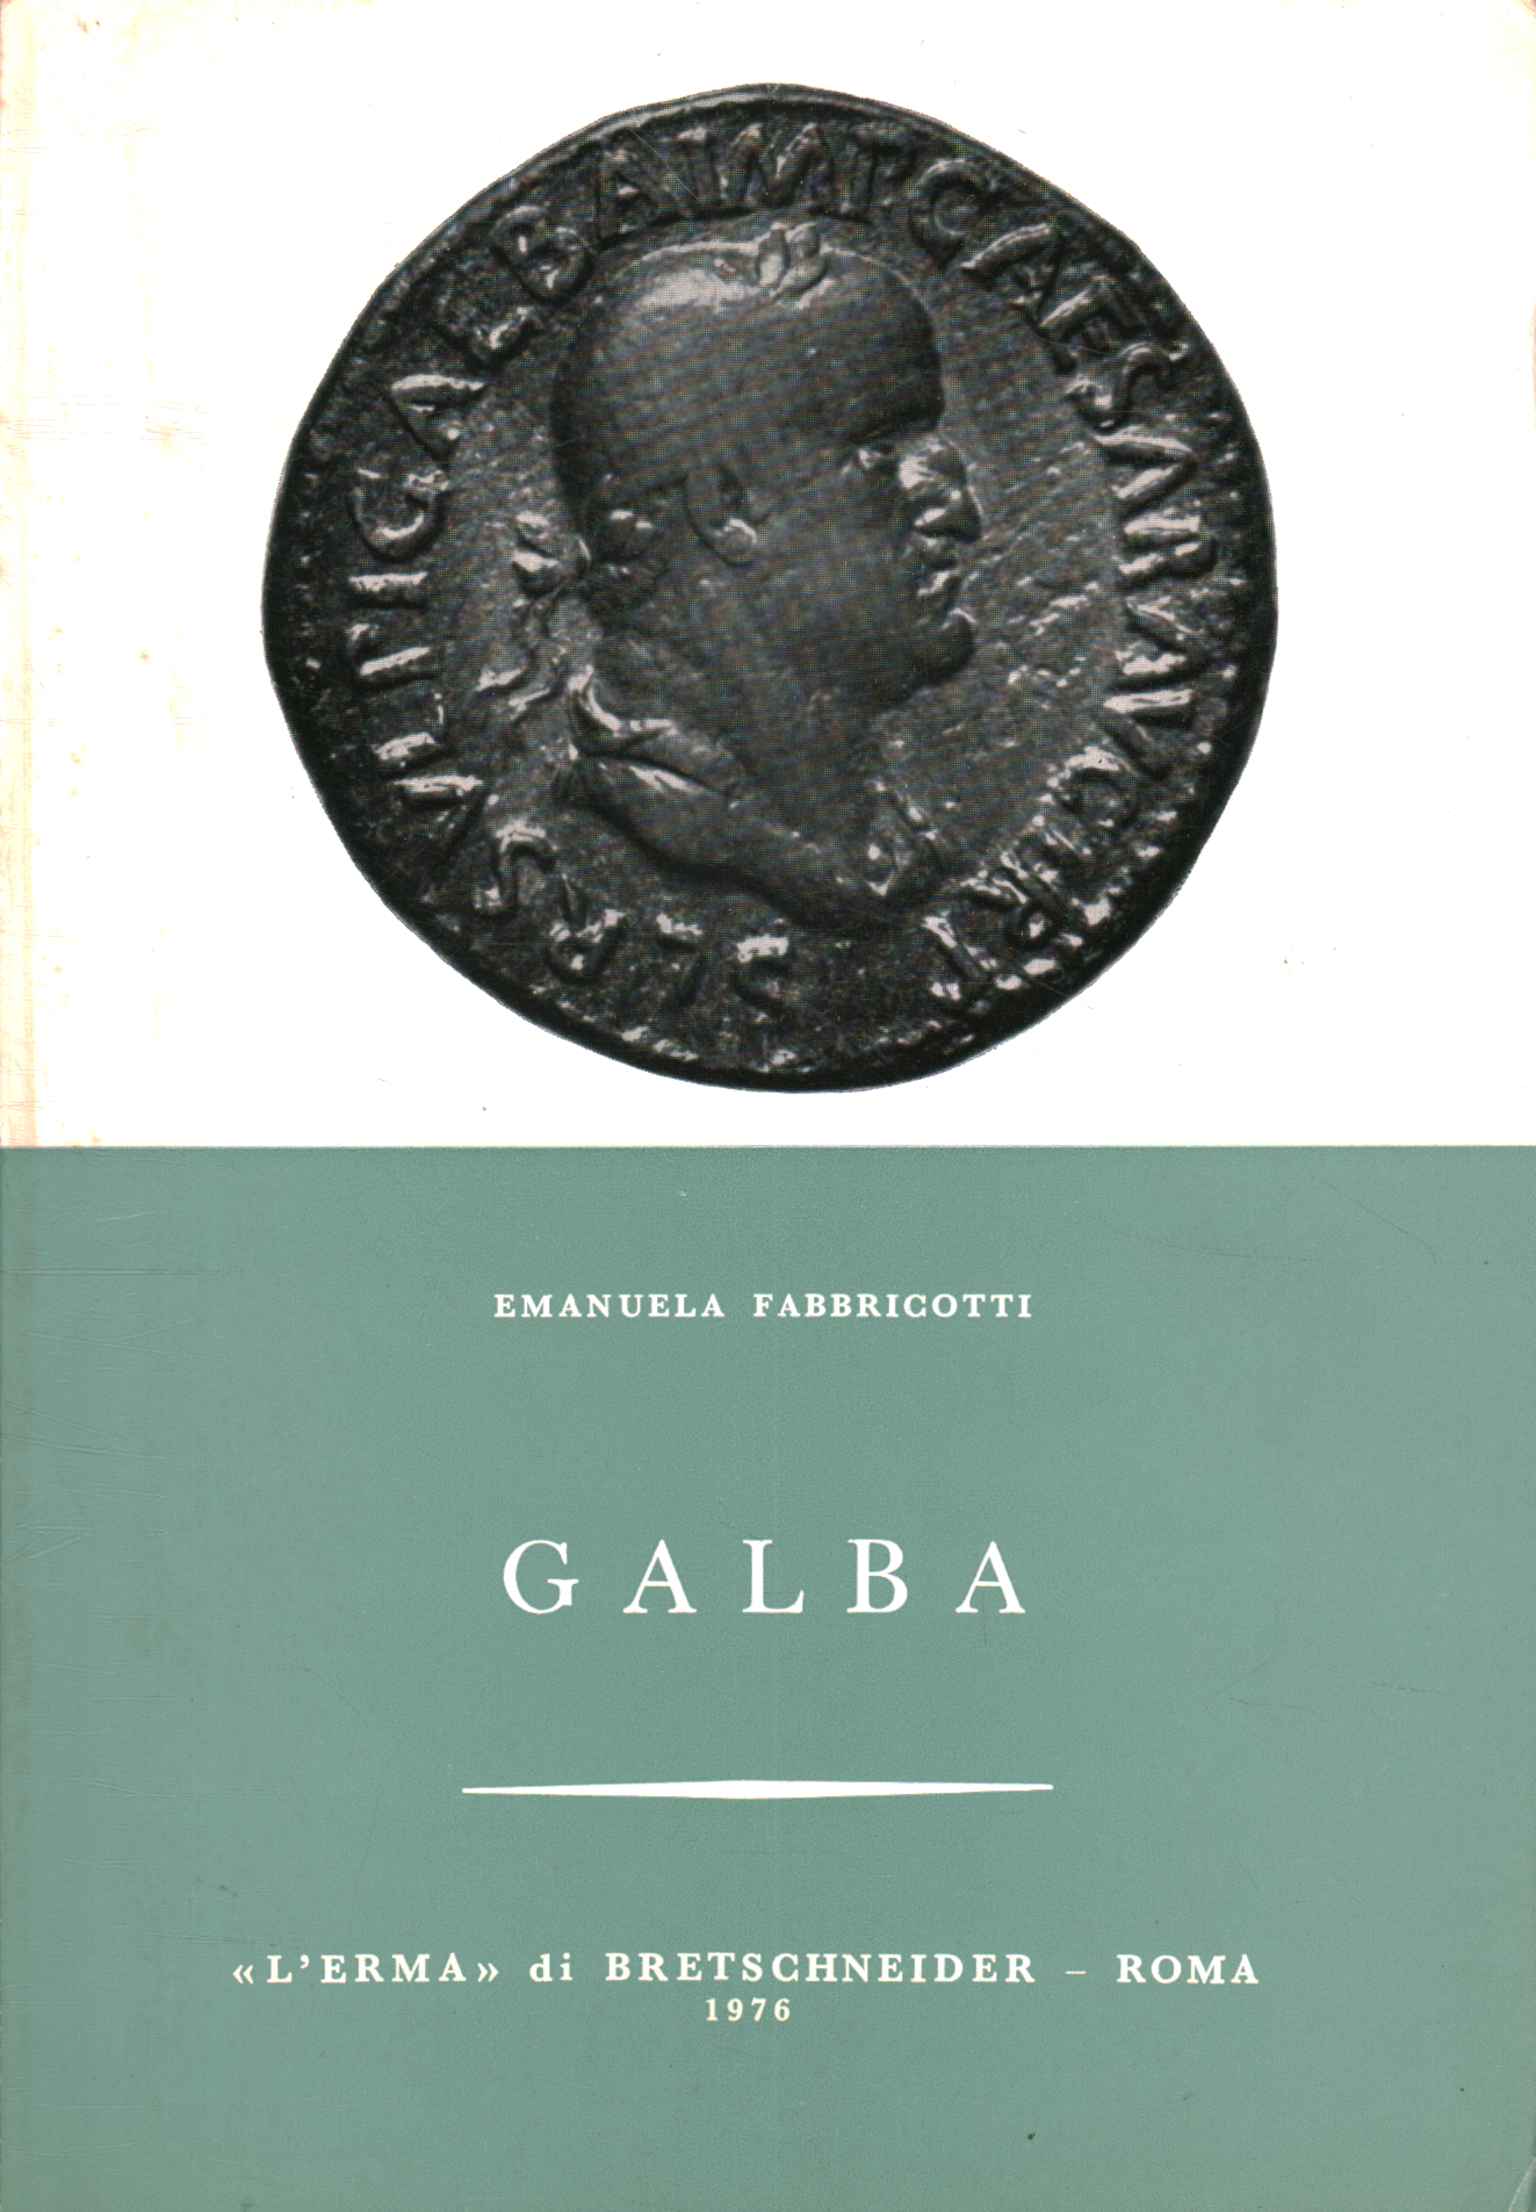 Libri - Storia - Antica,Galba